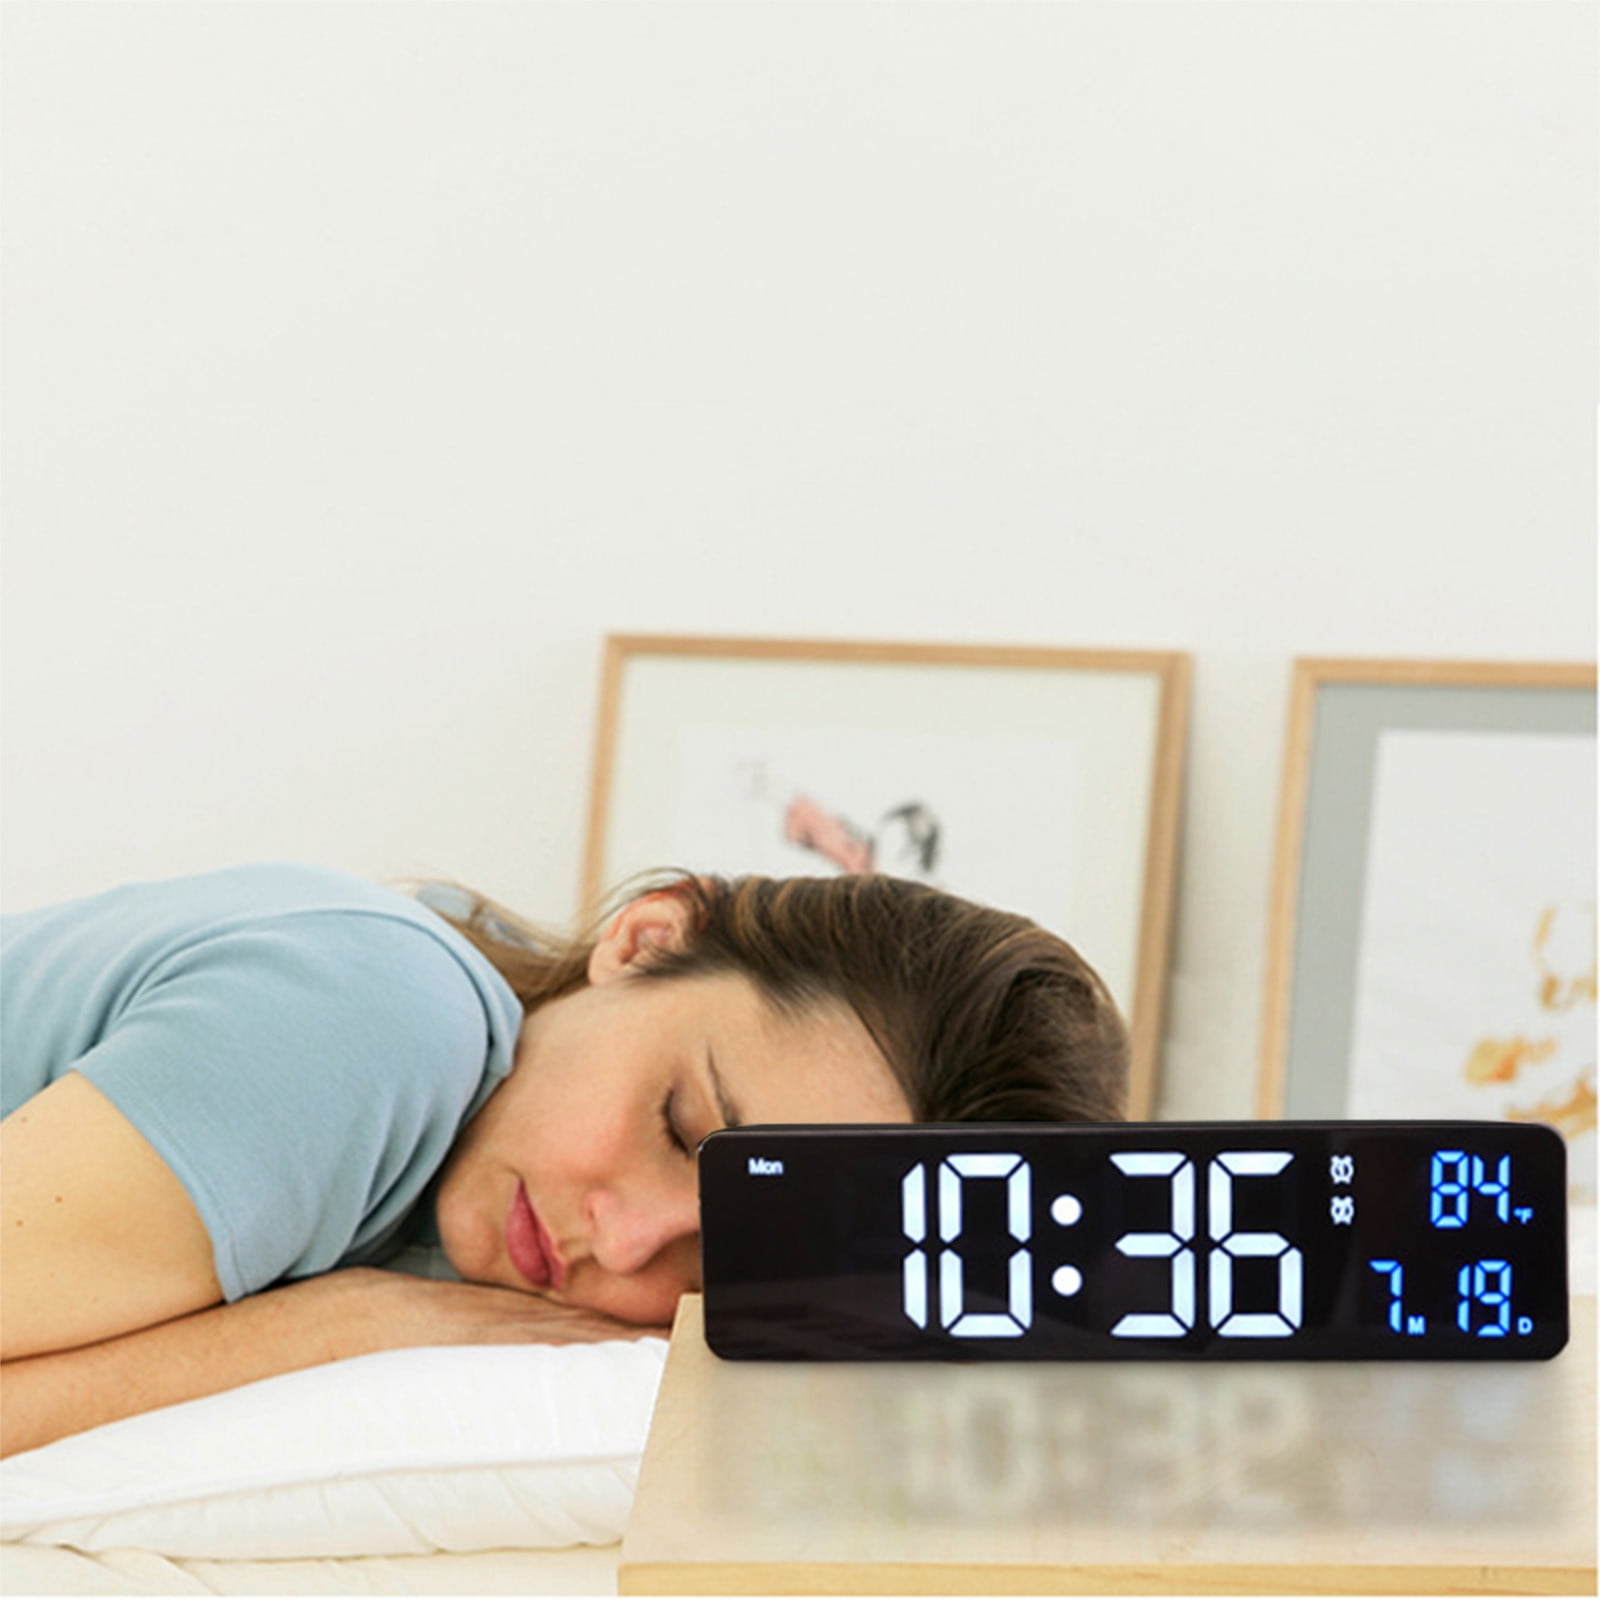 2pcs Animal Face 3 Inch Bell Alarm Clock Silent Clock Bedroom